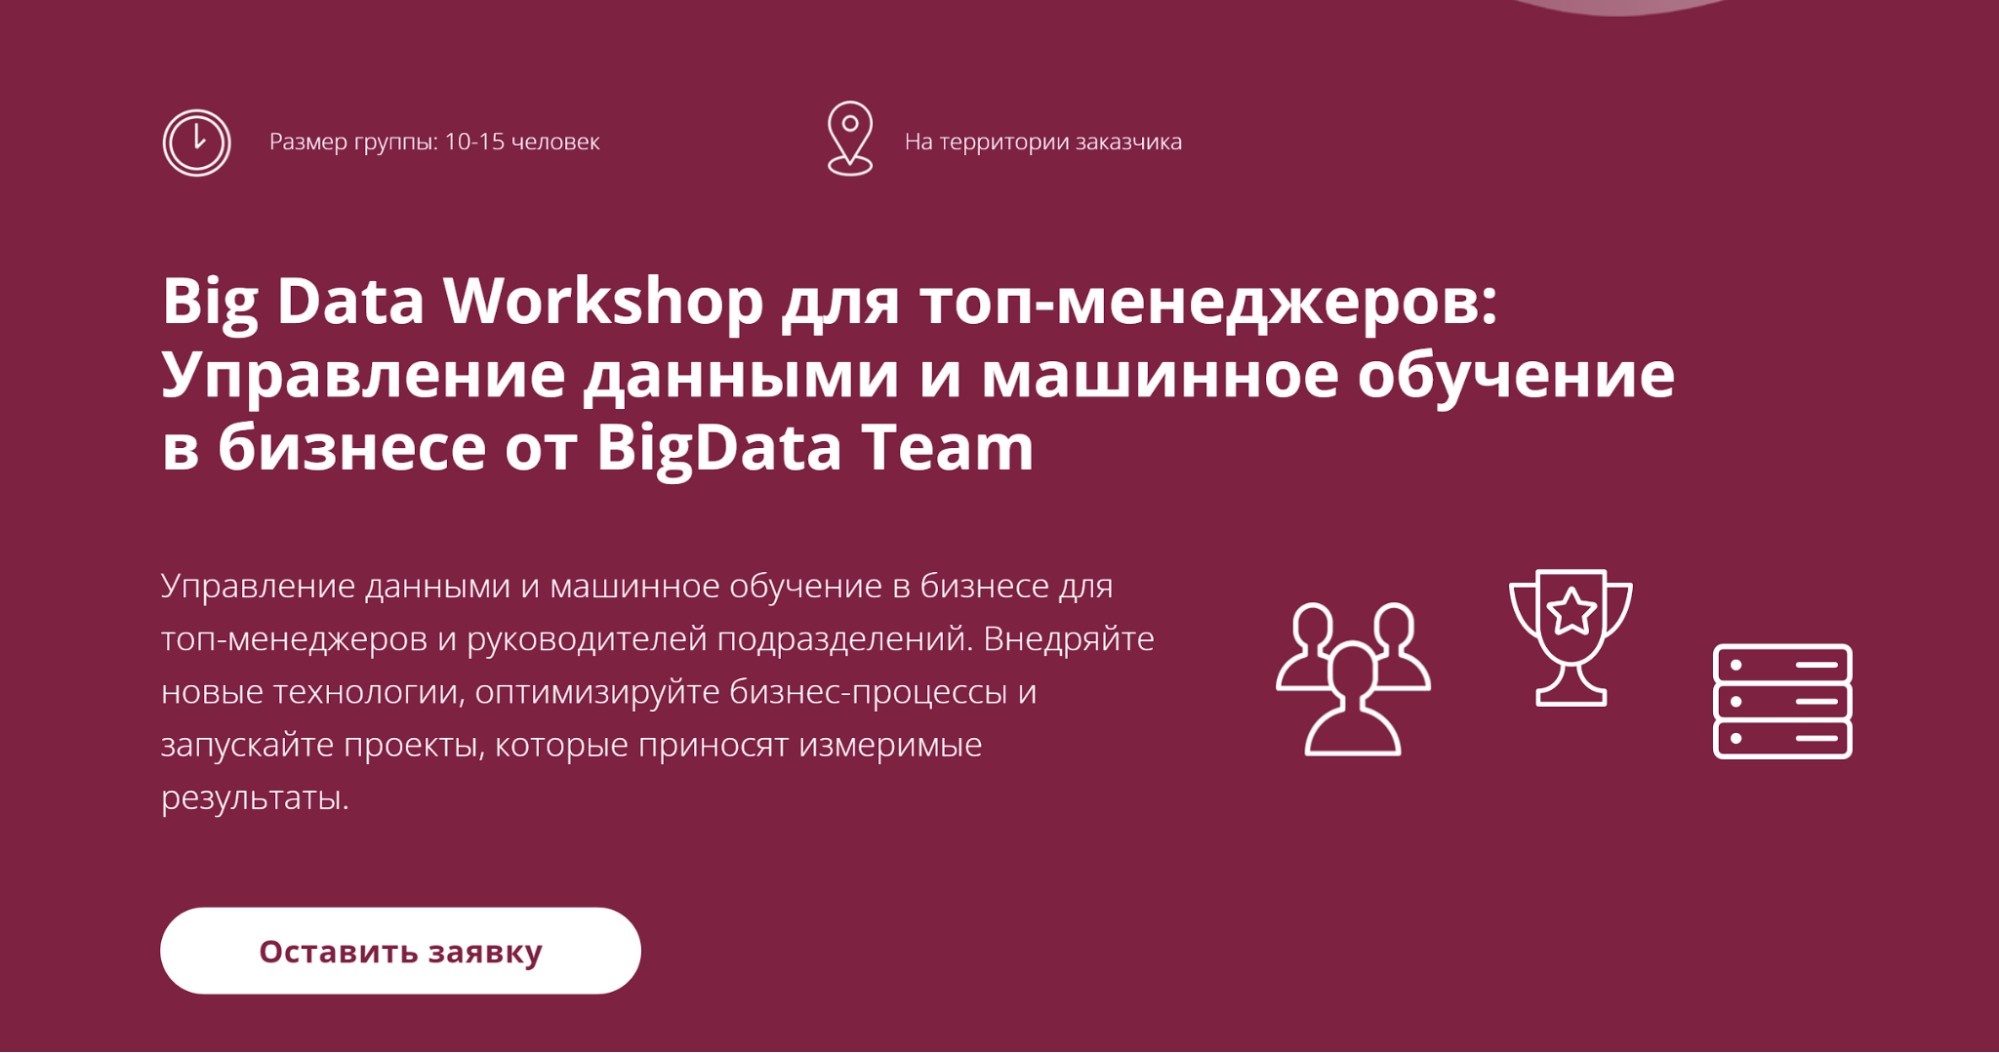 Пример ивента Big Data Workshop для топ-менеджеров